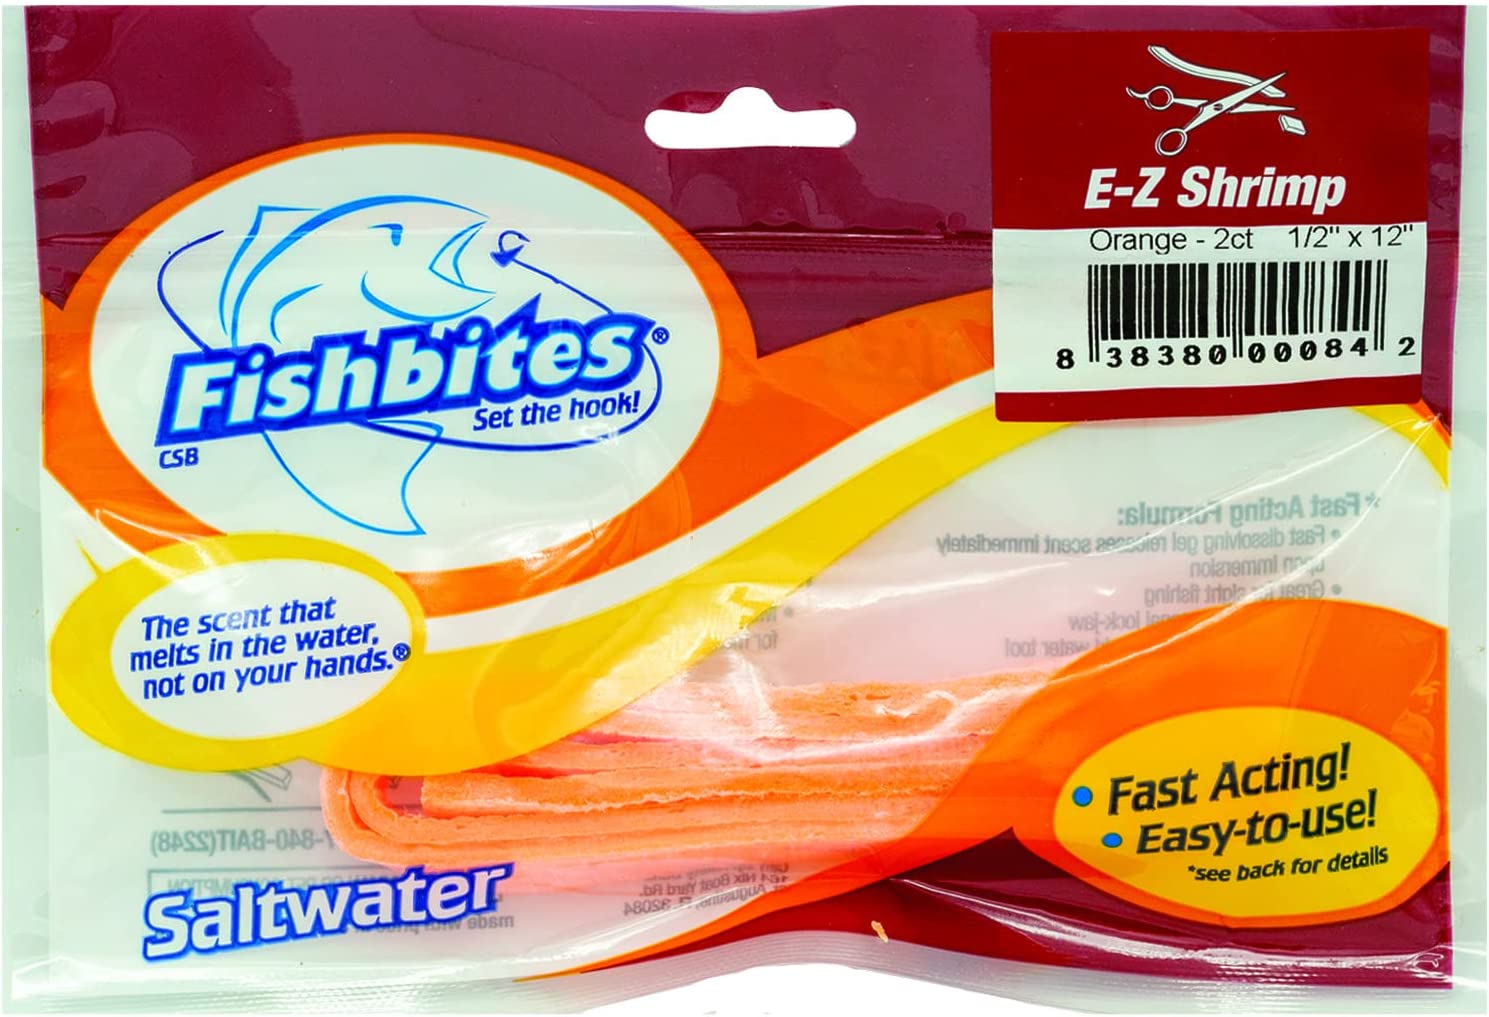 Fishbites E-Z Shrimp Fast Acting Bait Strips, 12", 2pk